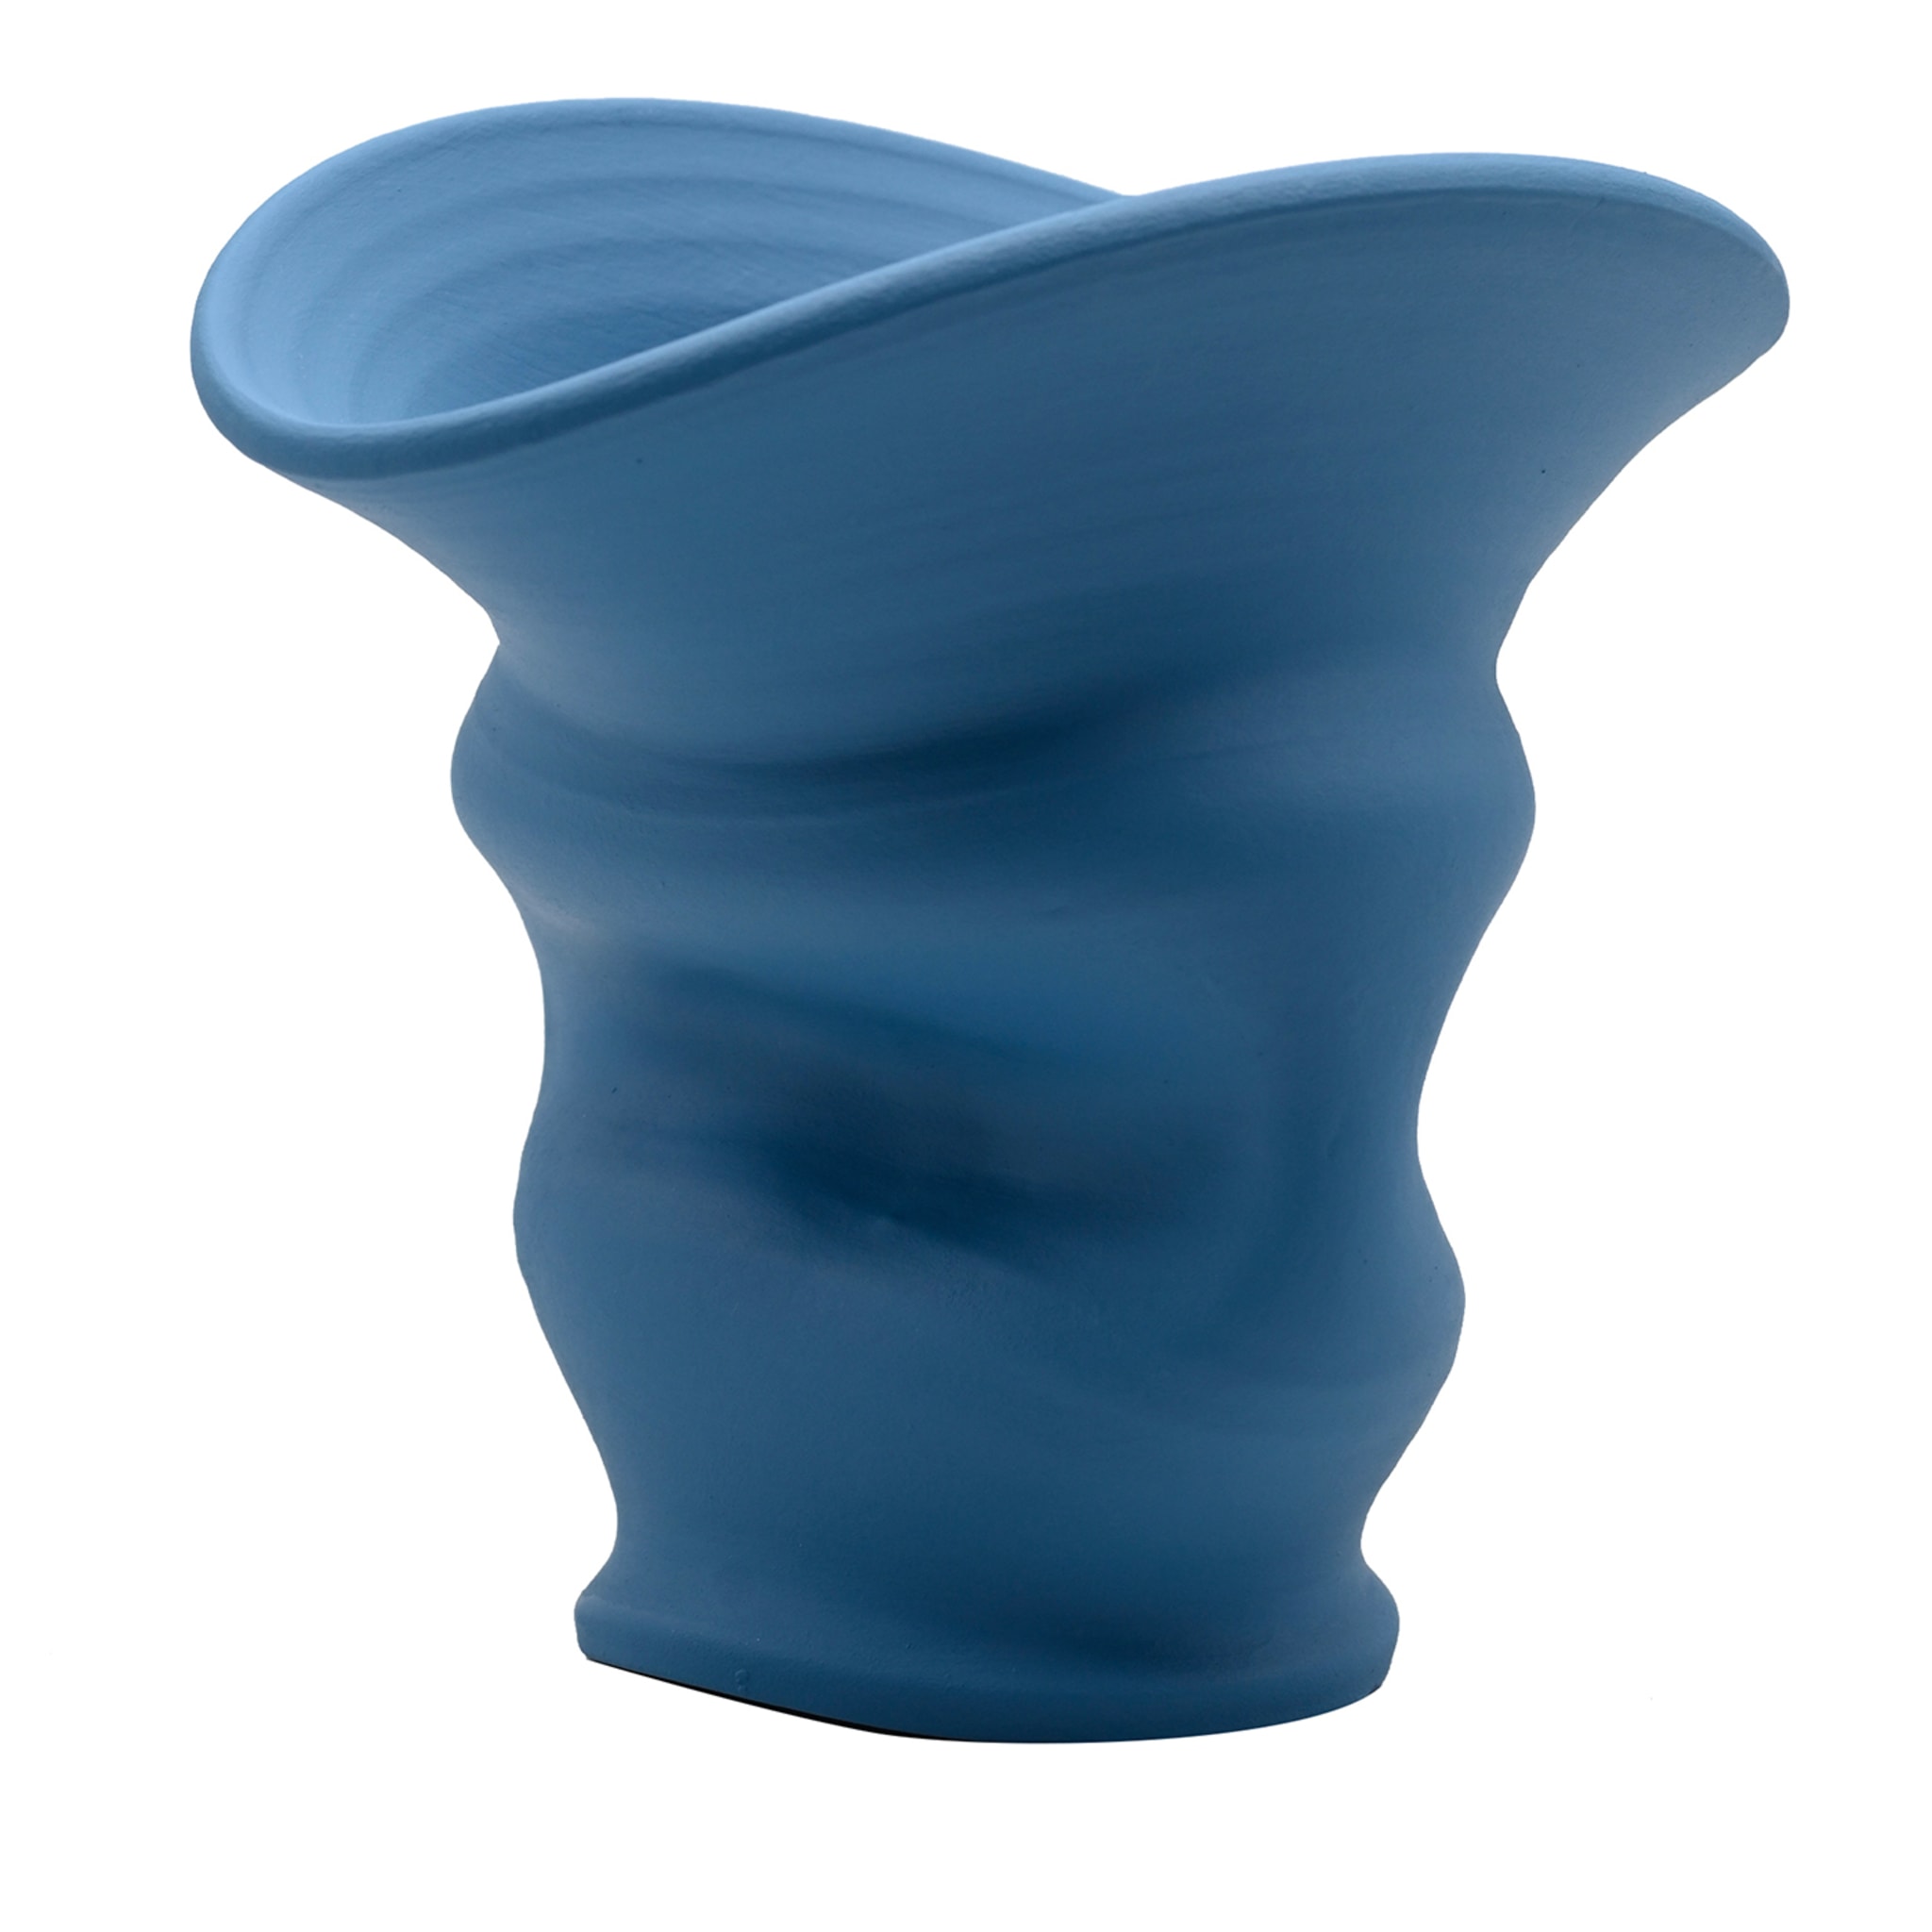 Artisan Vase in Soft Light Blue